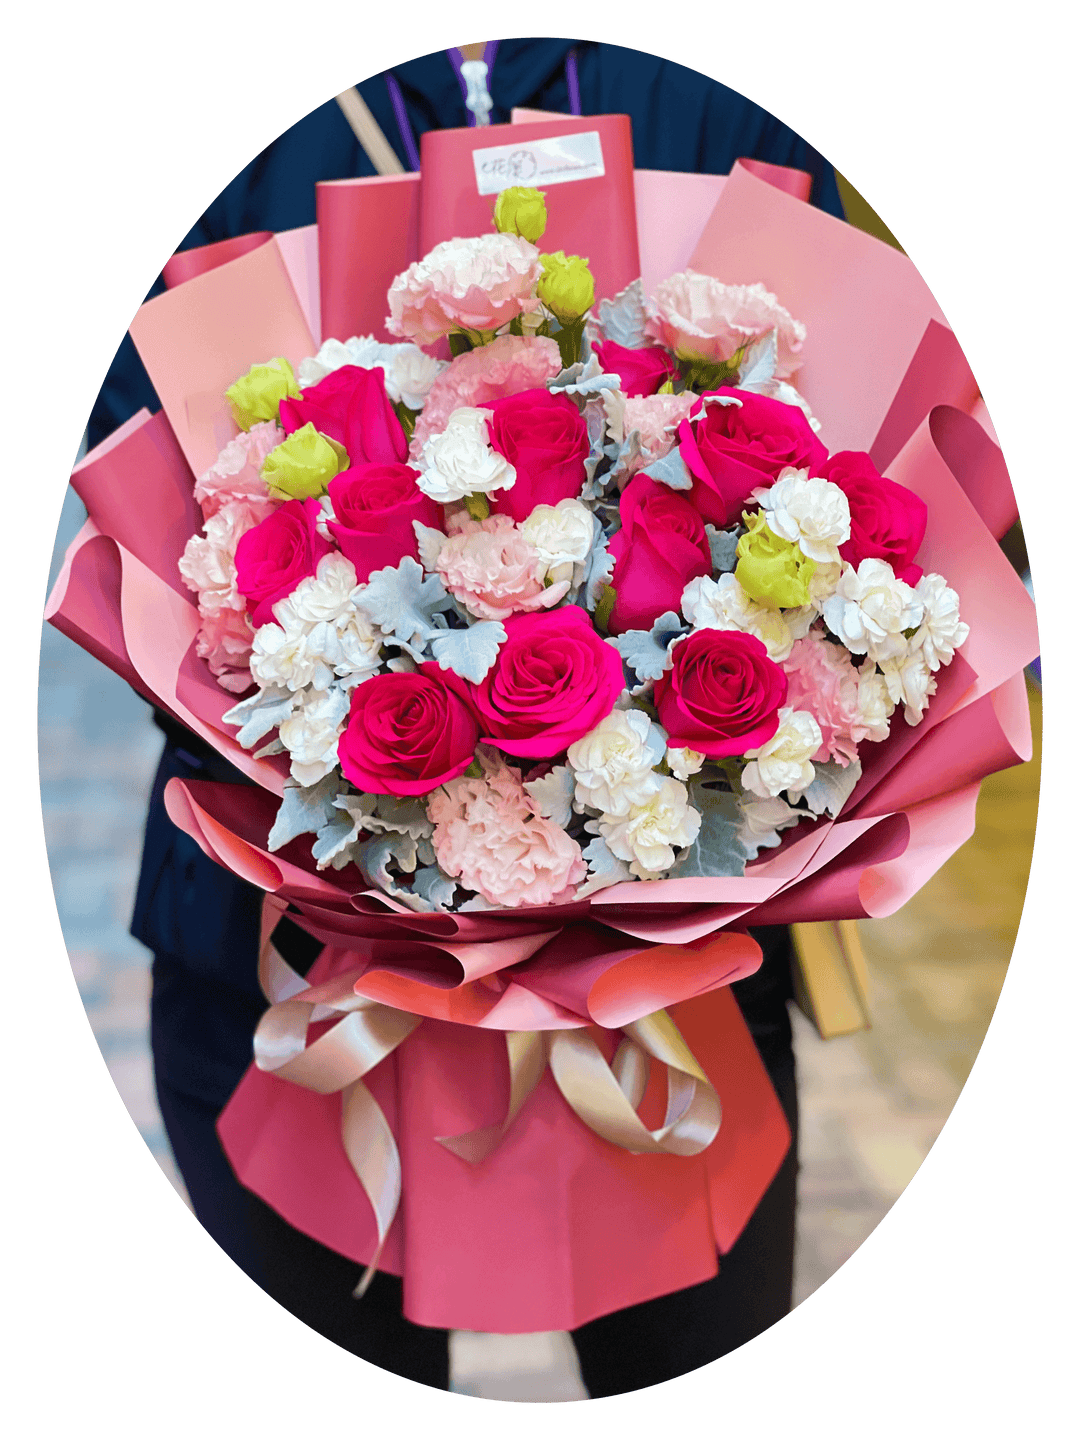 弗洛伊德桃紅玫瑰配桔梗花和銀菊葉